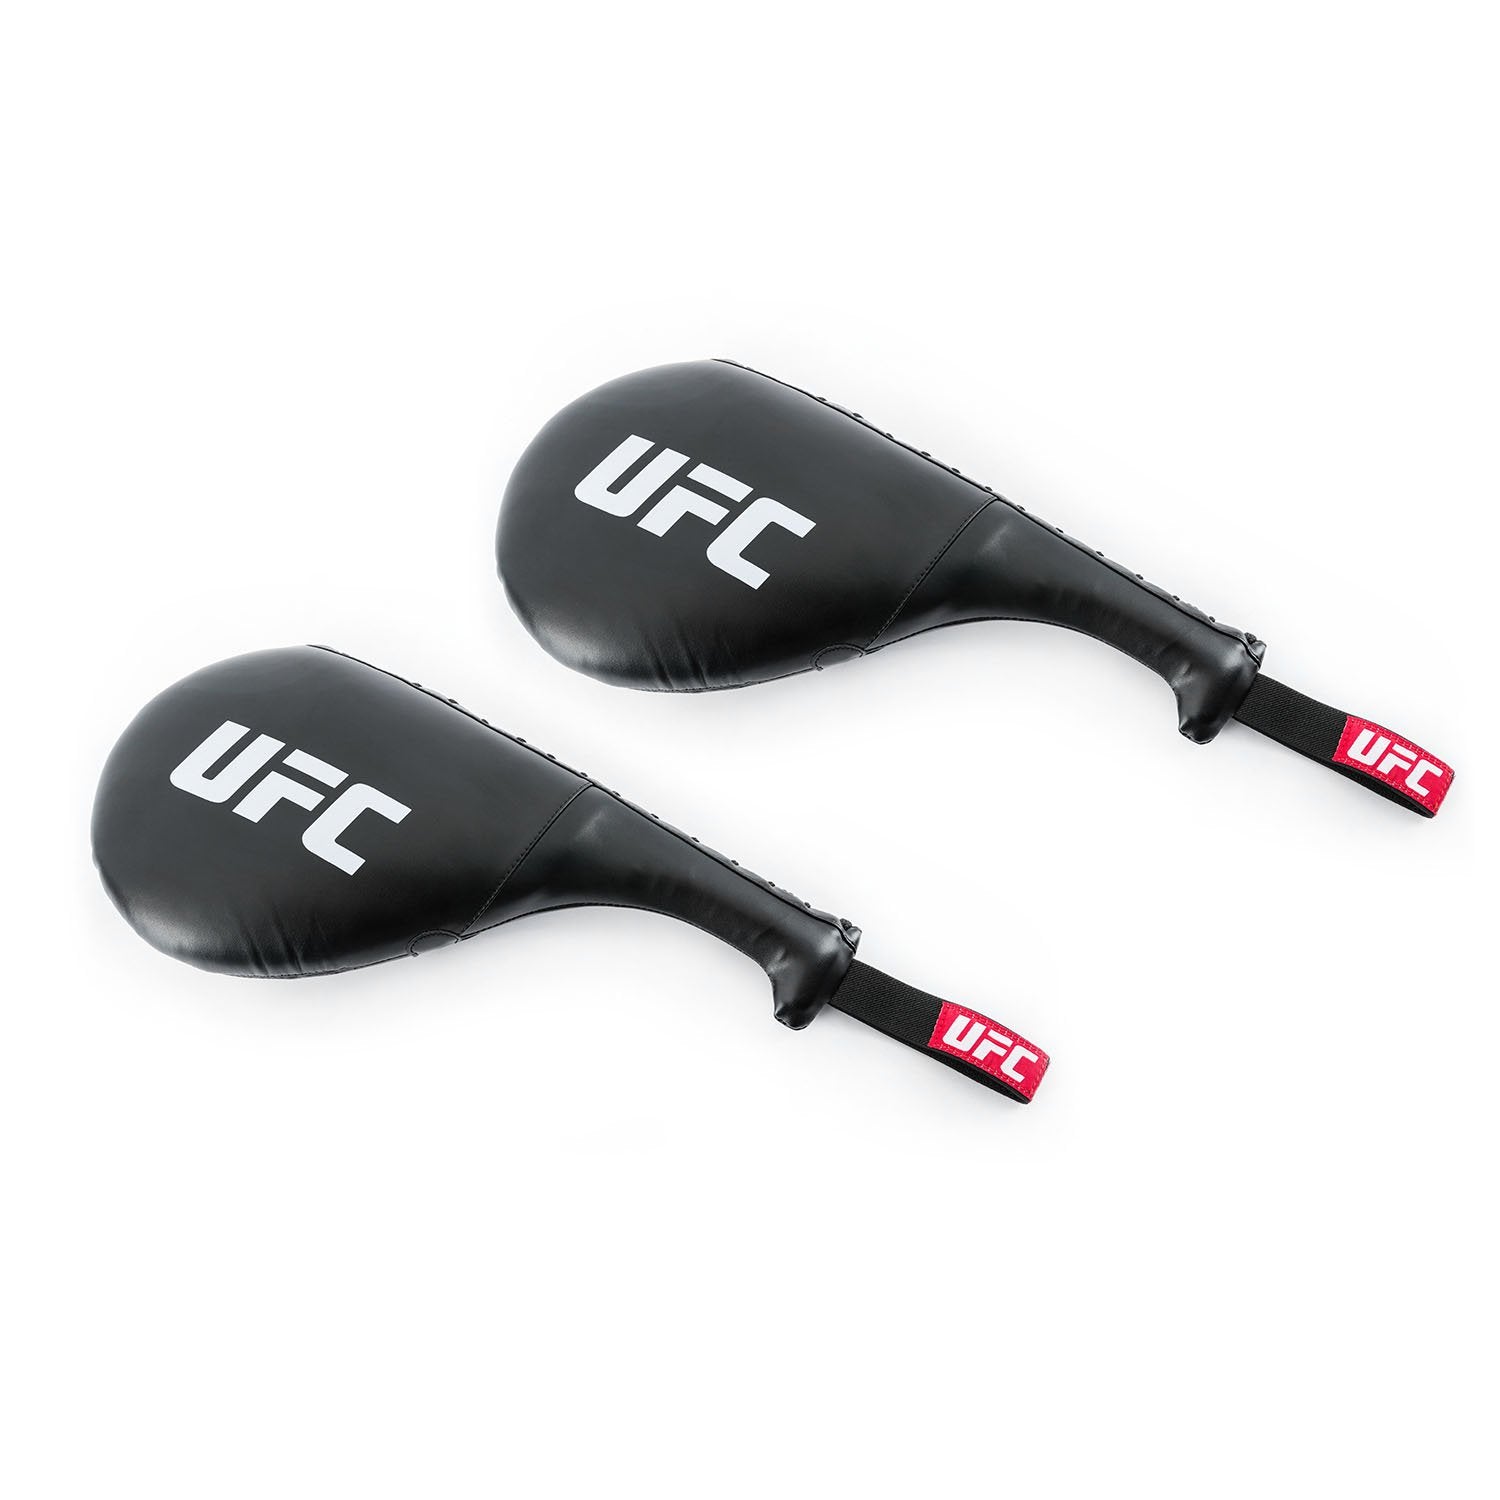 UFC Pro Paddle Targets